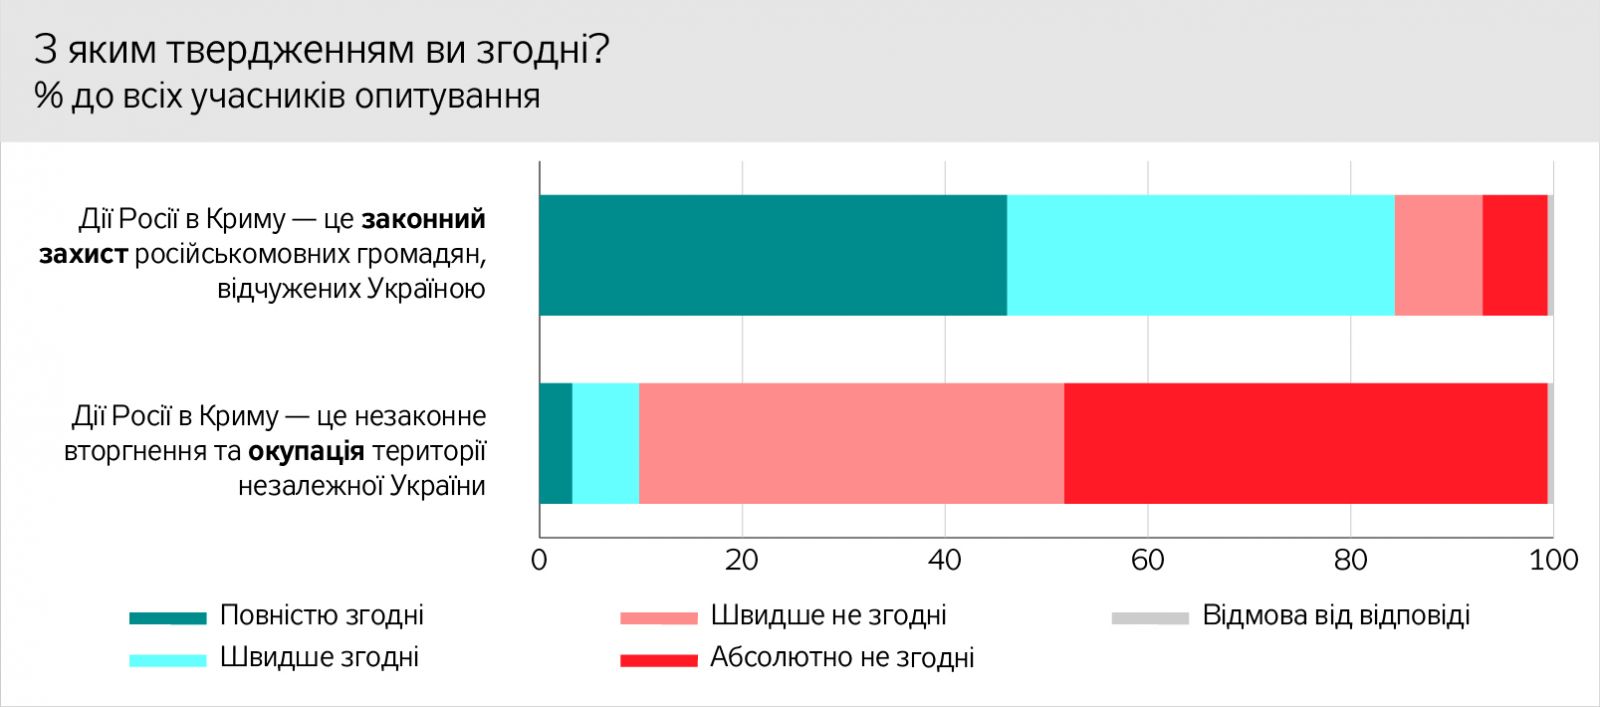 Реинтеграция Донбасса: большинство жителей ОРДЛО считают войну внутренним конфликтом, но 58% называют себя гражданами Украины, фото — ЗН